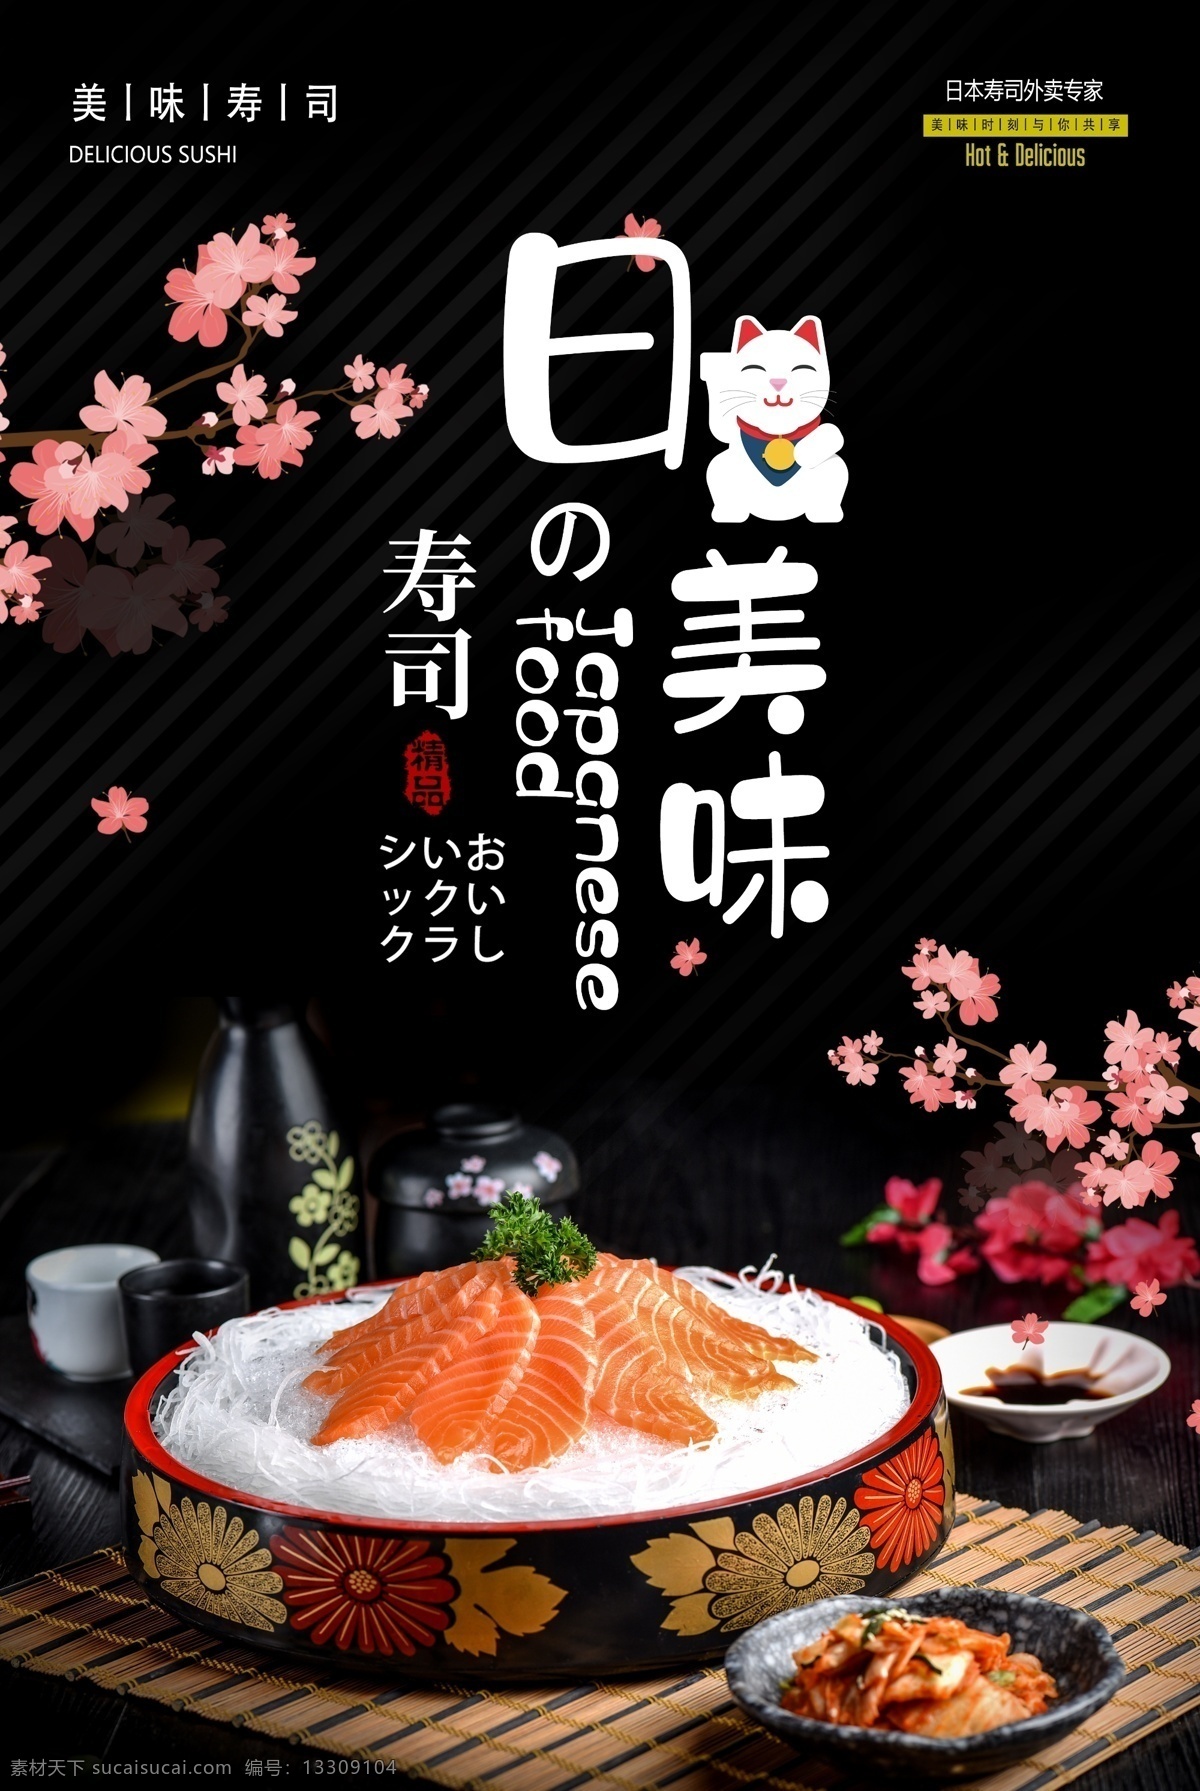 日本 美食 生鱼片 料理 海报 促销 日料促销 美食海报 日料 日本美食 日料海报 美味 食品 食品海报 日式